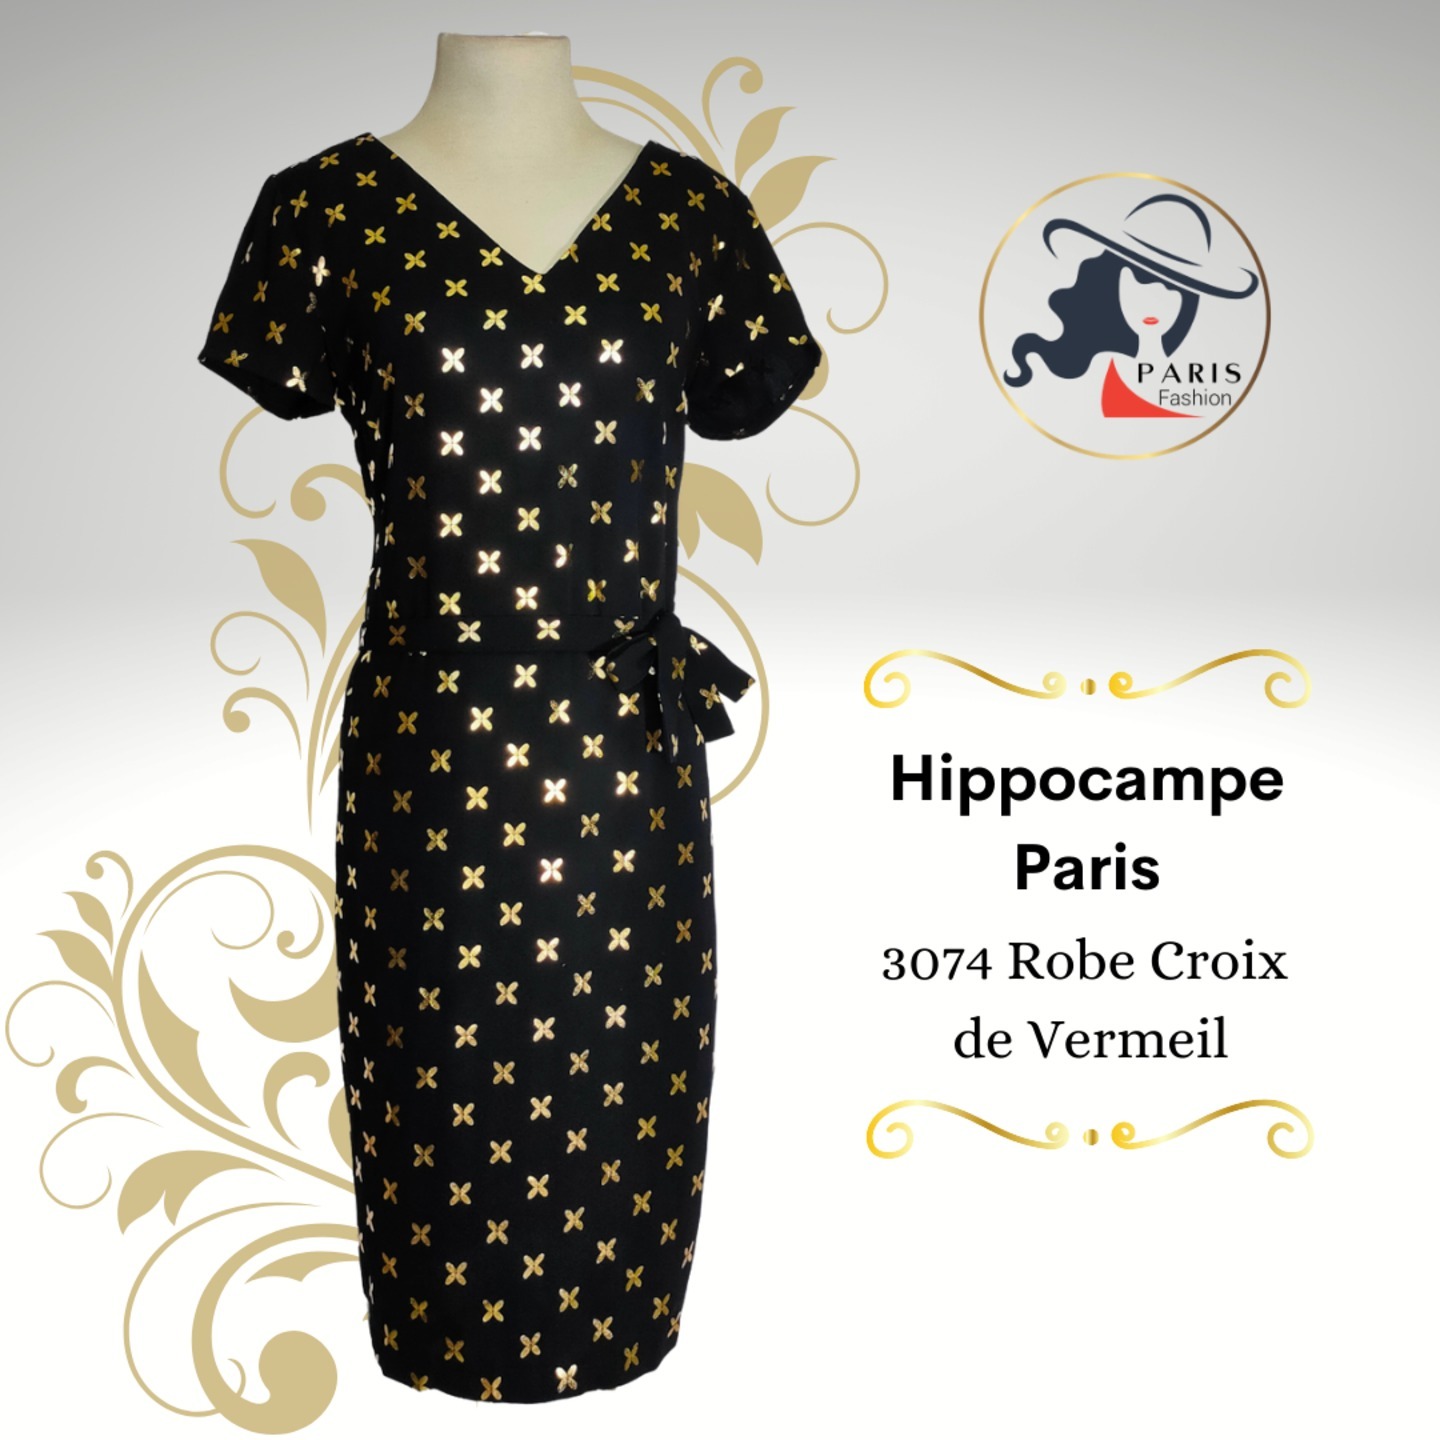 HIPPOCAMPE PARIS 3074 ROBE CROIX DE VERMEIL BLACK GOLD SHIFT DRESS